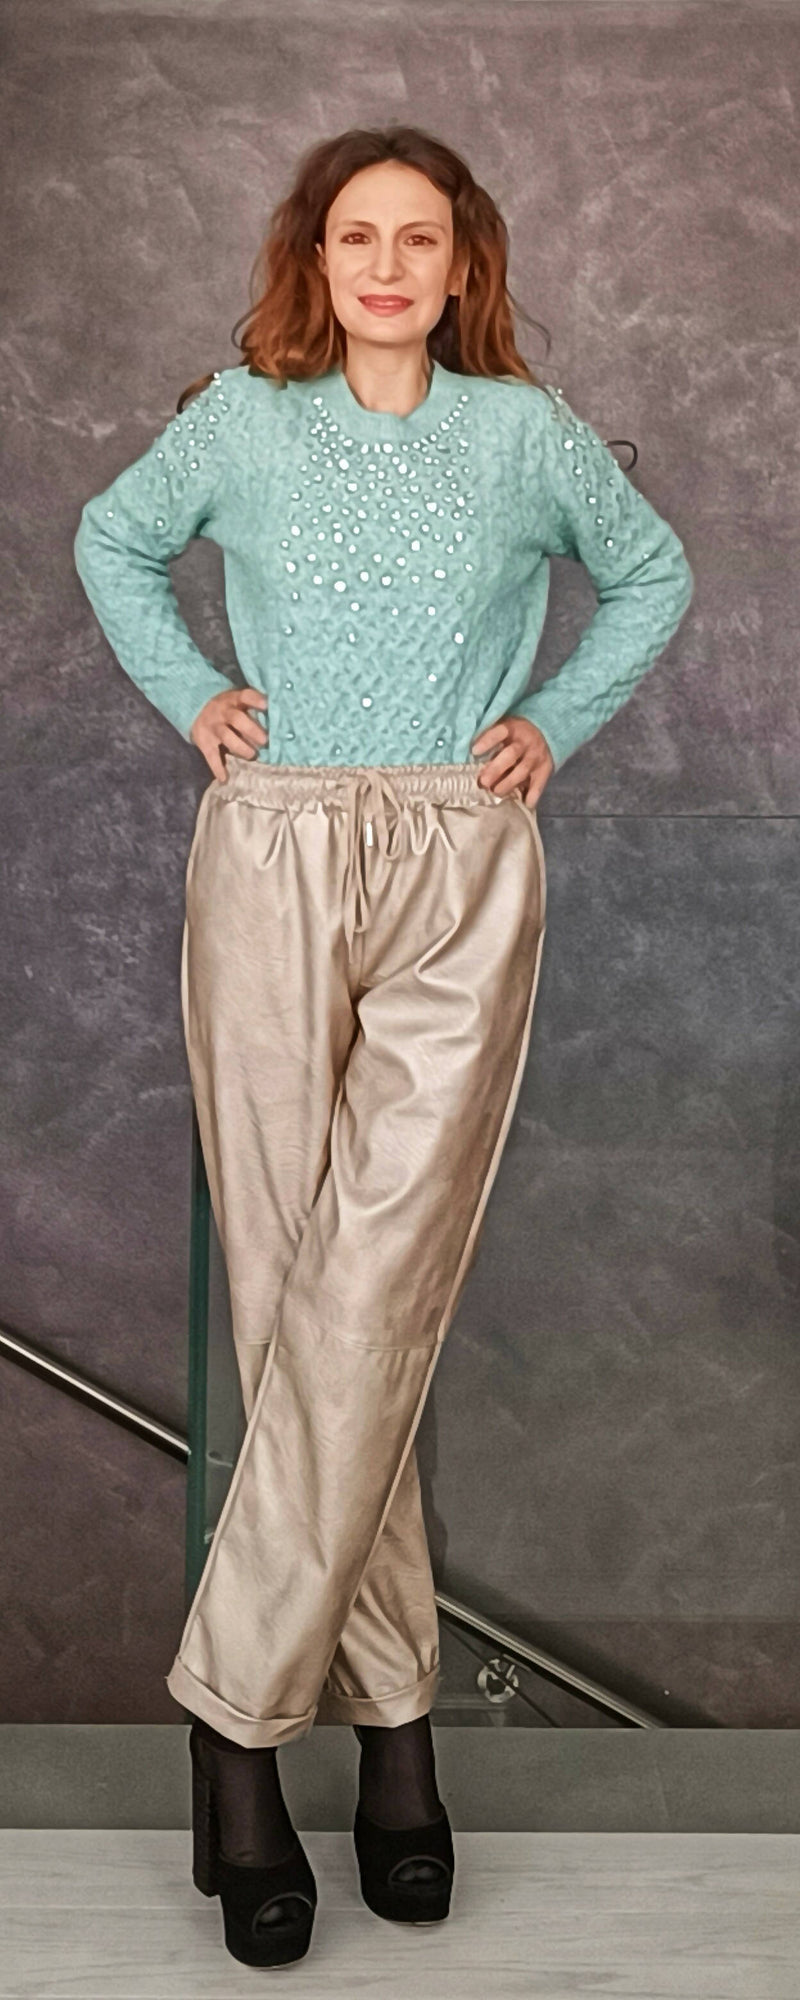 Pantaloni argento, champagne , melanzana. 3 colori glam a scelta, taglia unica, elastico in vita, tasche laterali